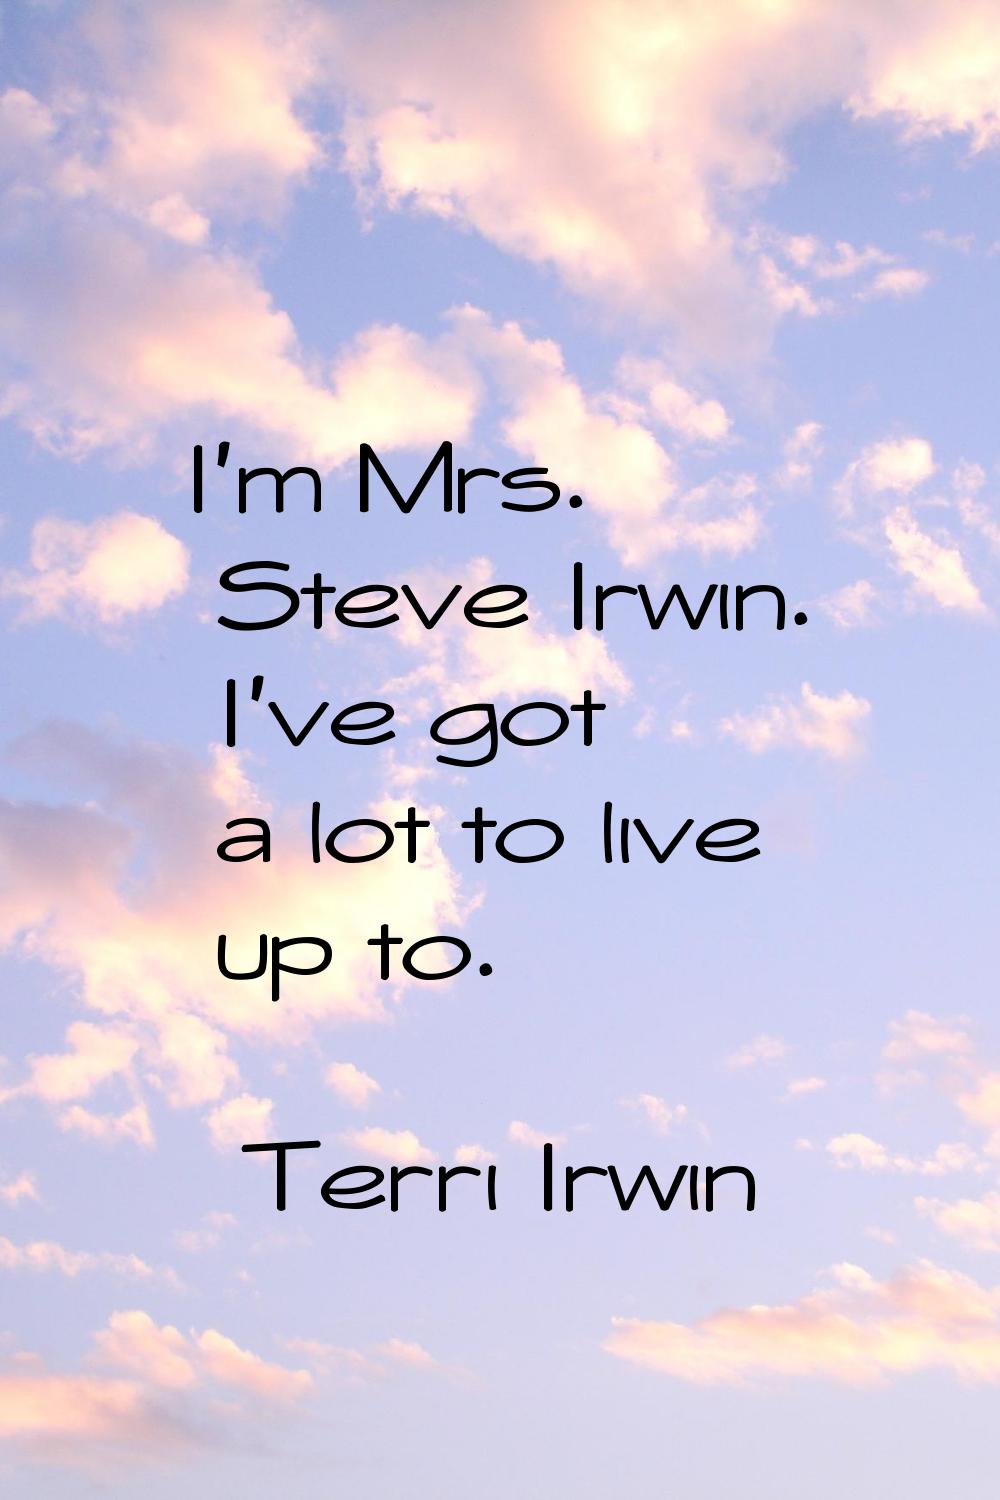 I'm Mrs. Steve Irwin. I've got a lot to live up to.